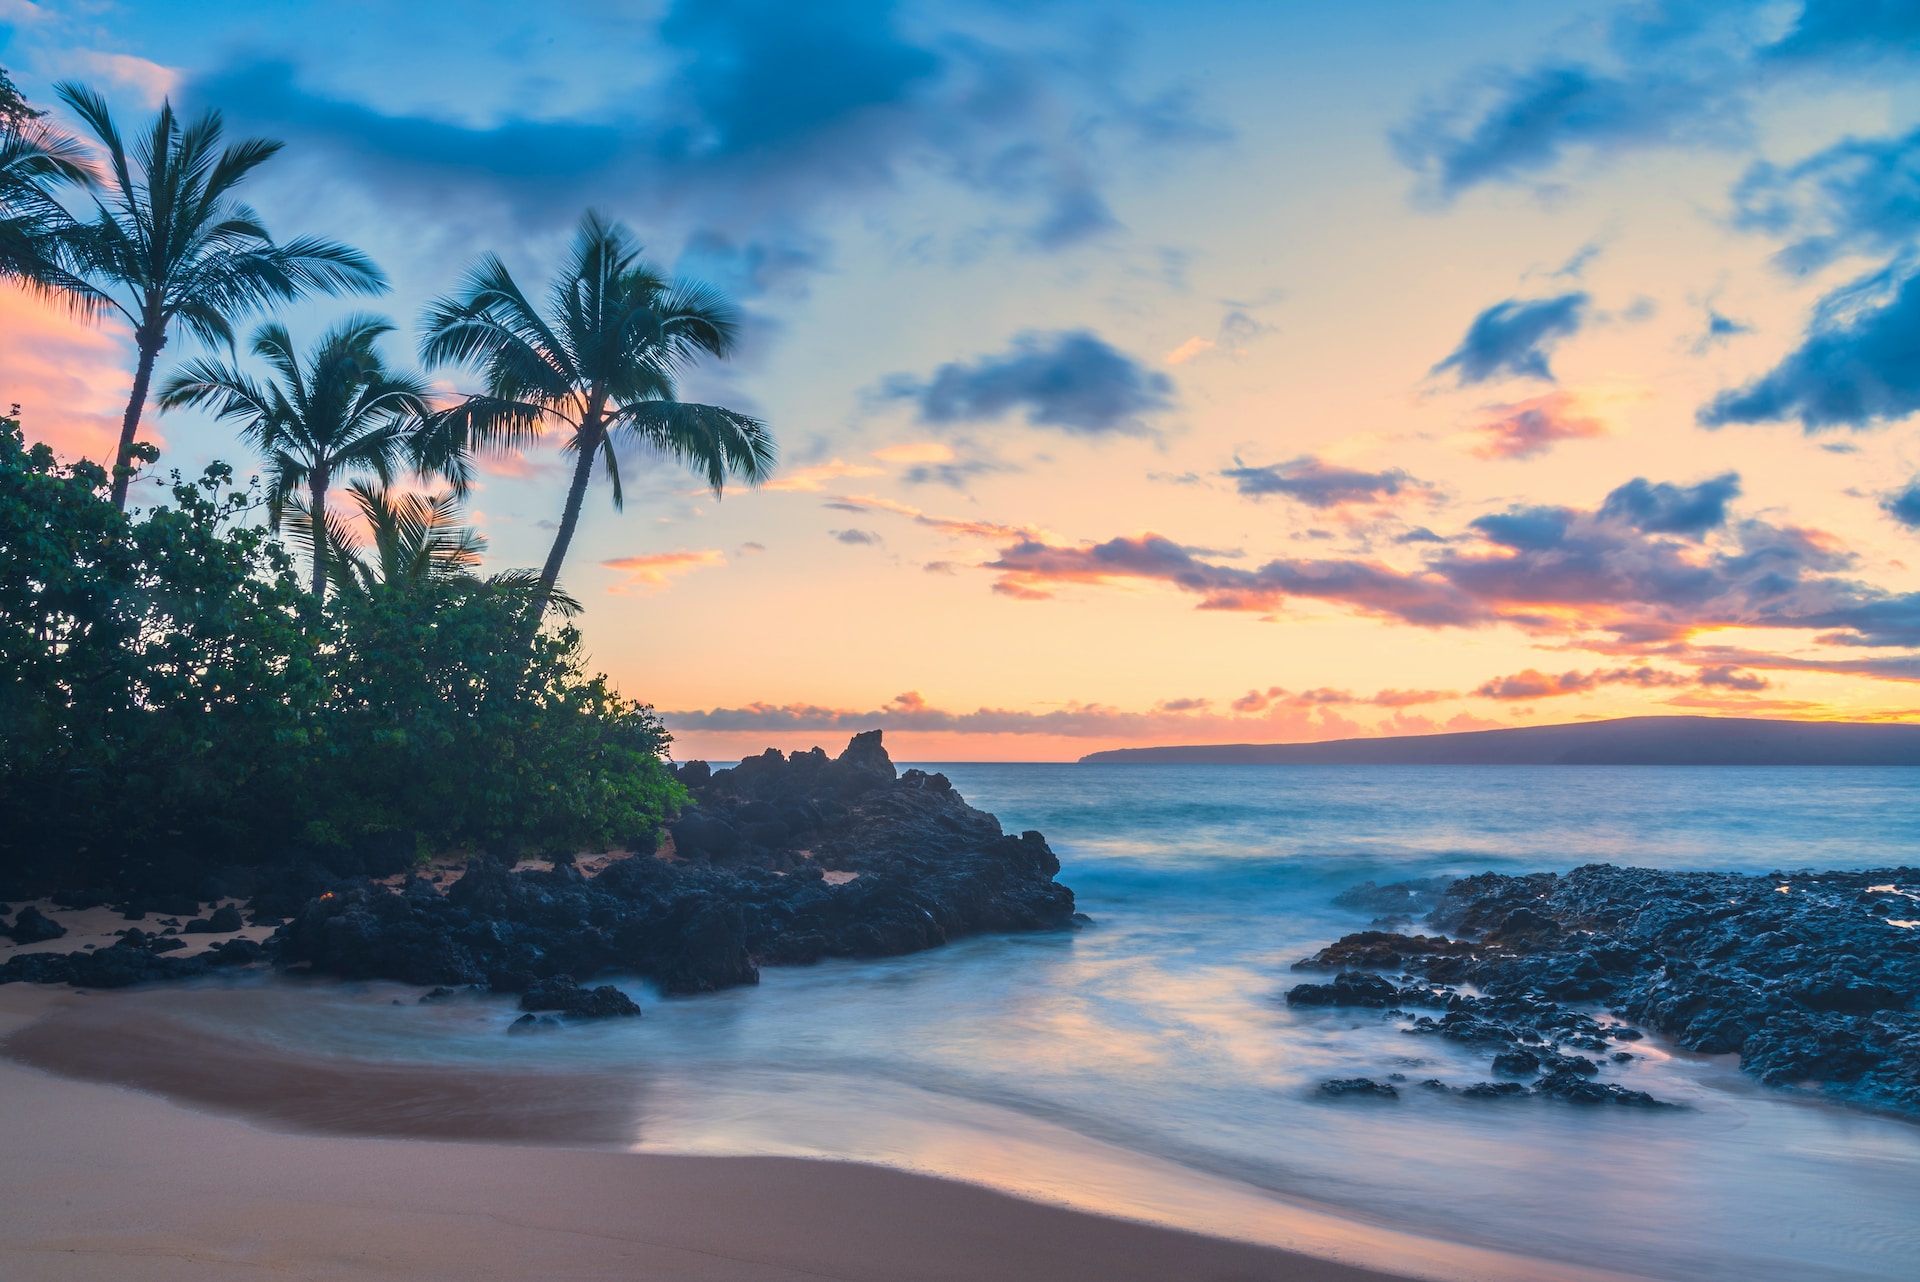 Reasons to Visit Maui